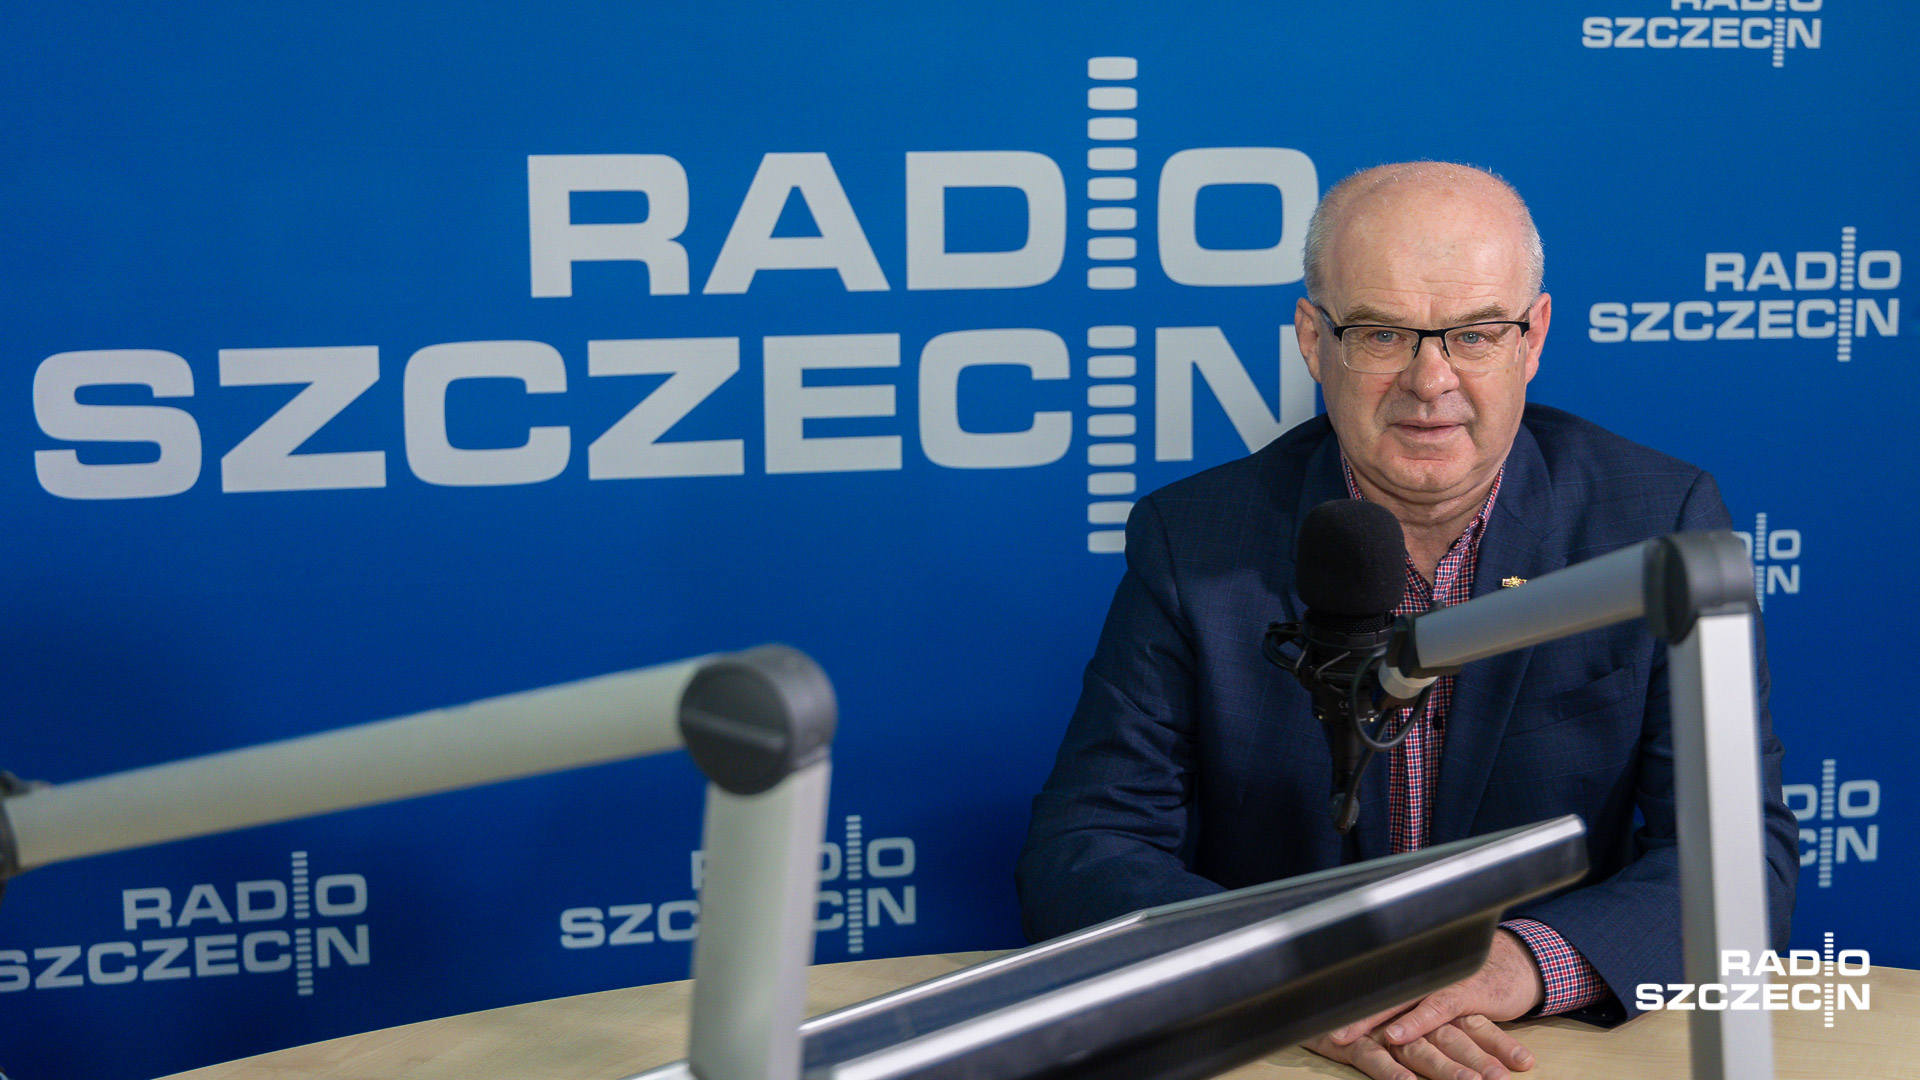 Bez pomocy Ameryki będzie bardzo trudno - ocenili goście audycji Radio Szczecin na Wieczór, którzy dyskutowali na temat potencjalnych scenariuszy rozwoju wojny.